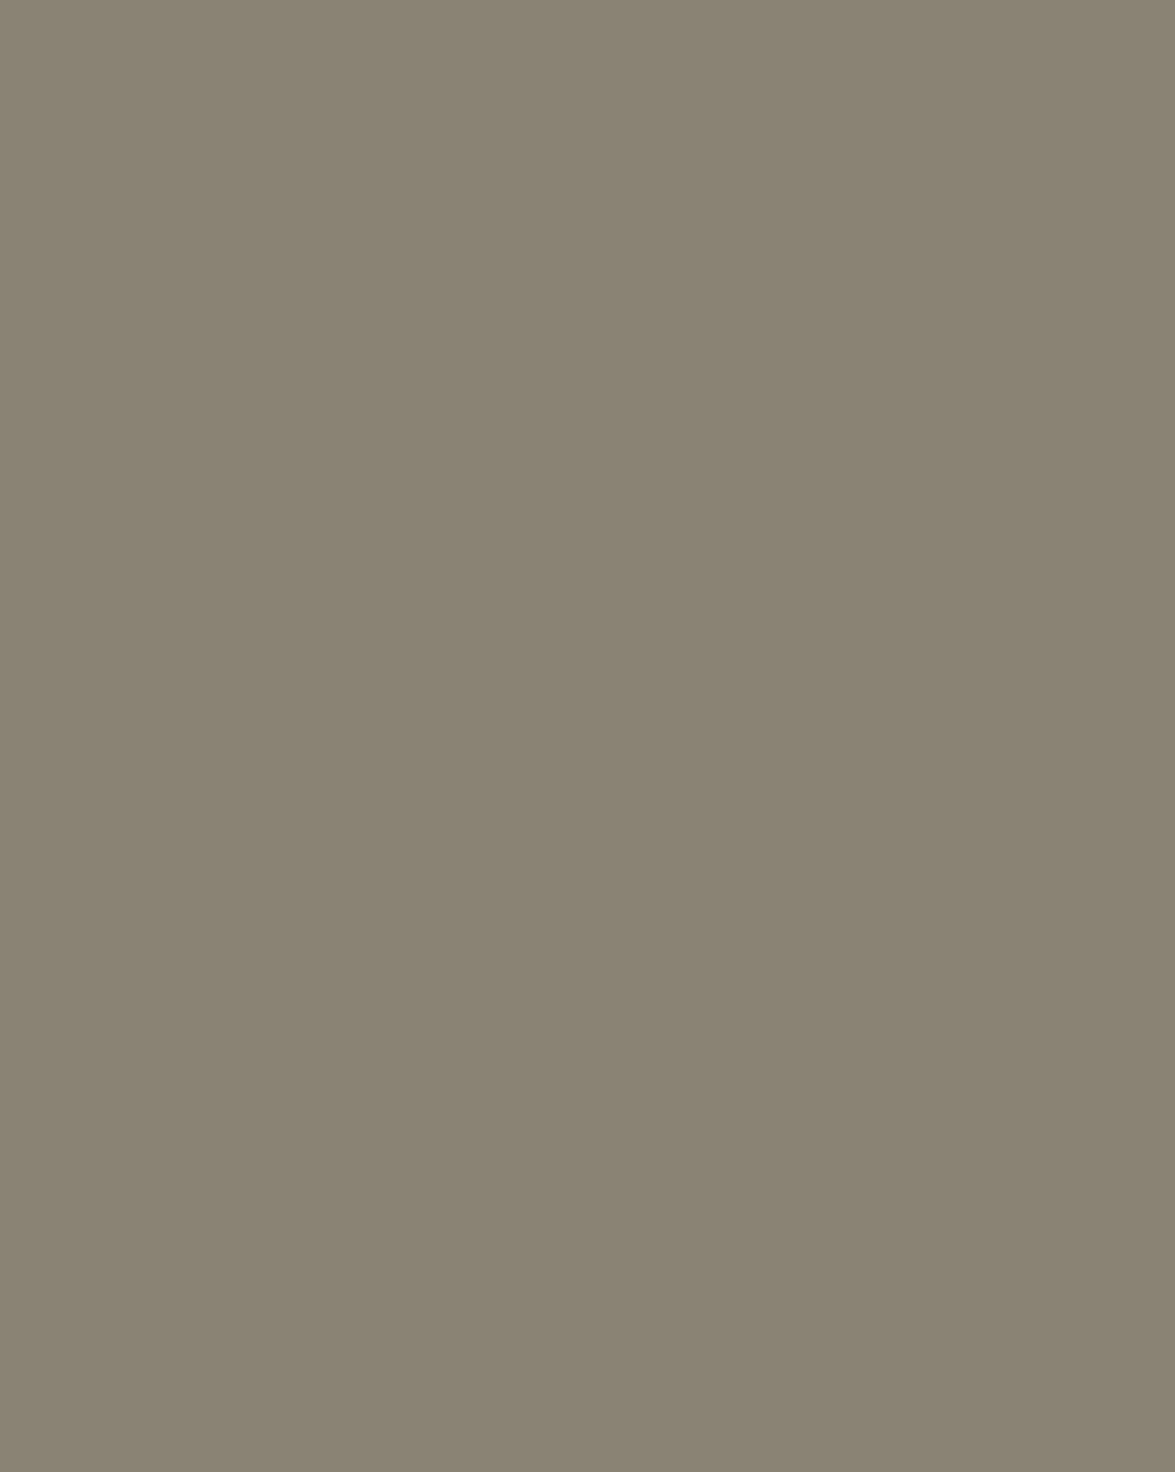 Иван Крамской. Неизвестная (фрагмент). 1883. Государственная Третьяковская галерея, Москва